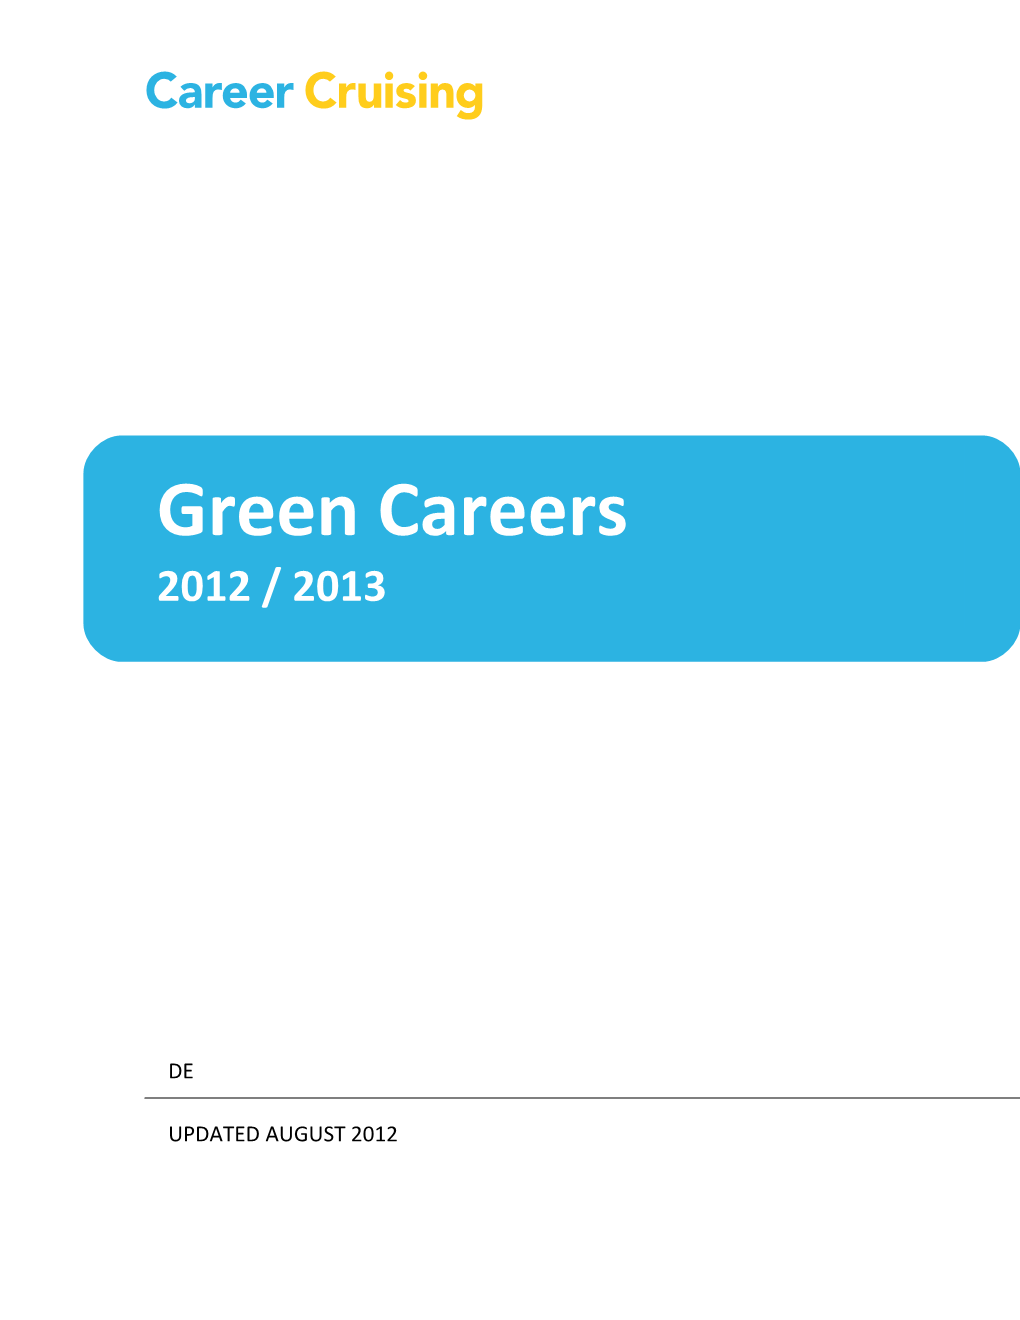 Green Careers Activity 1: Green Goals 3